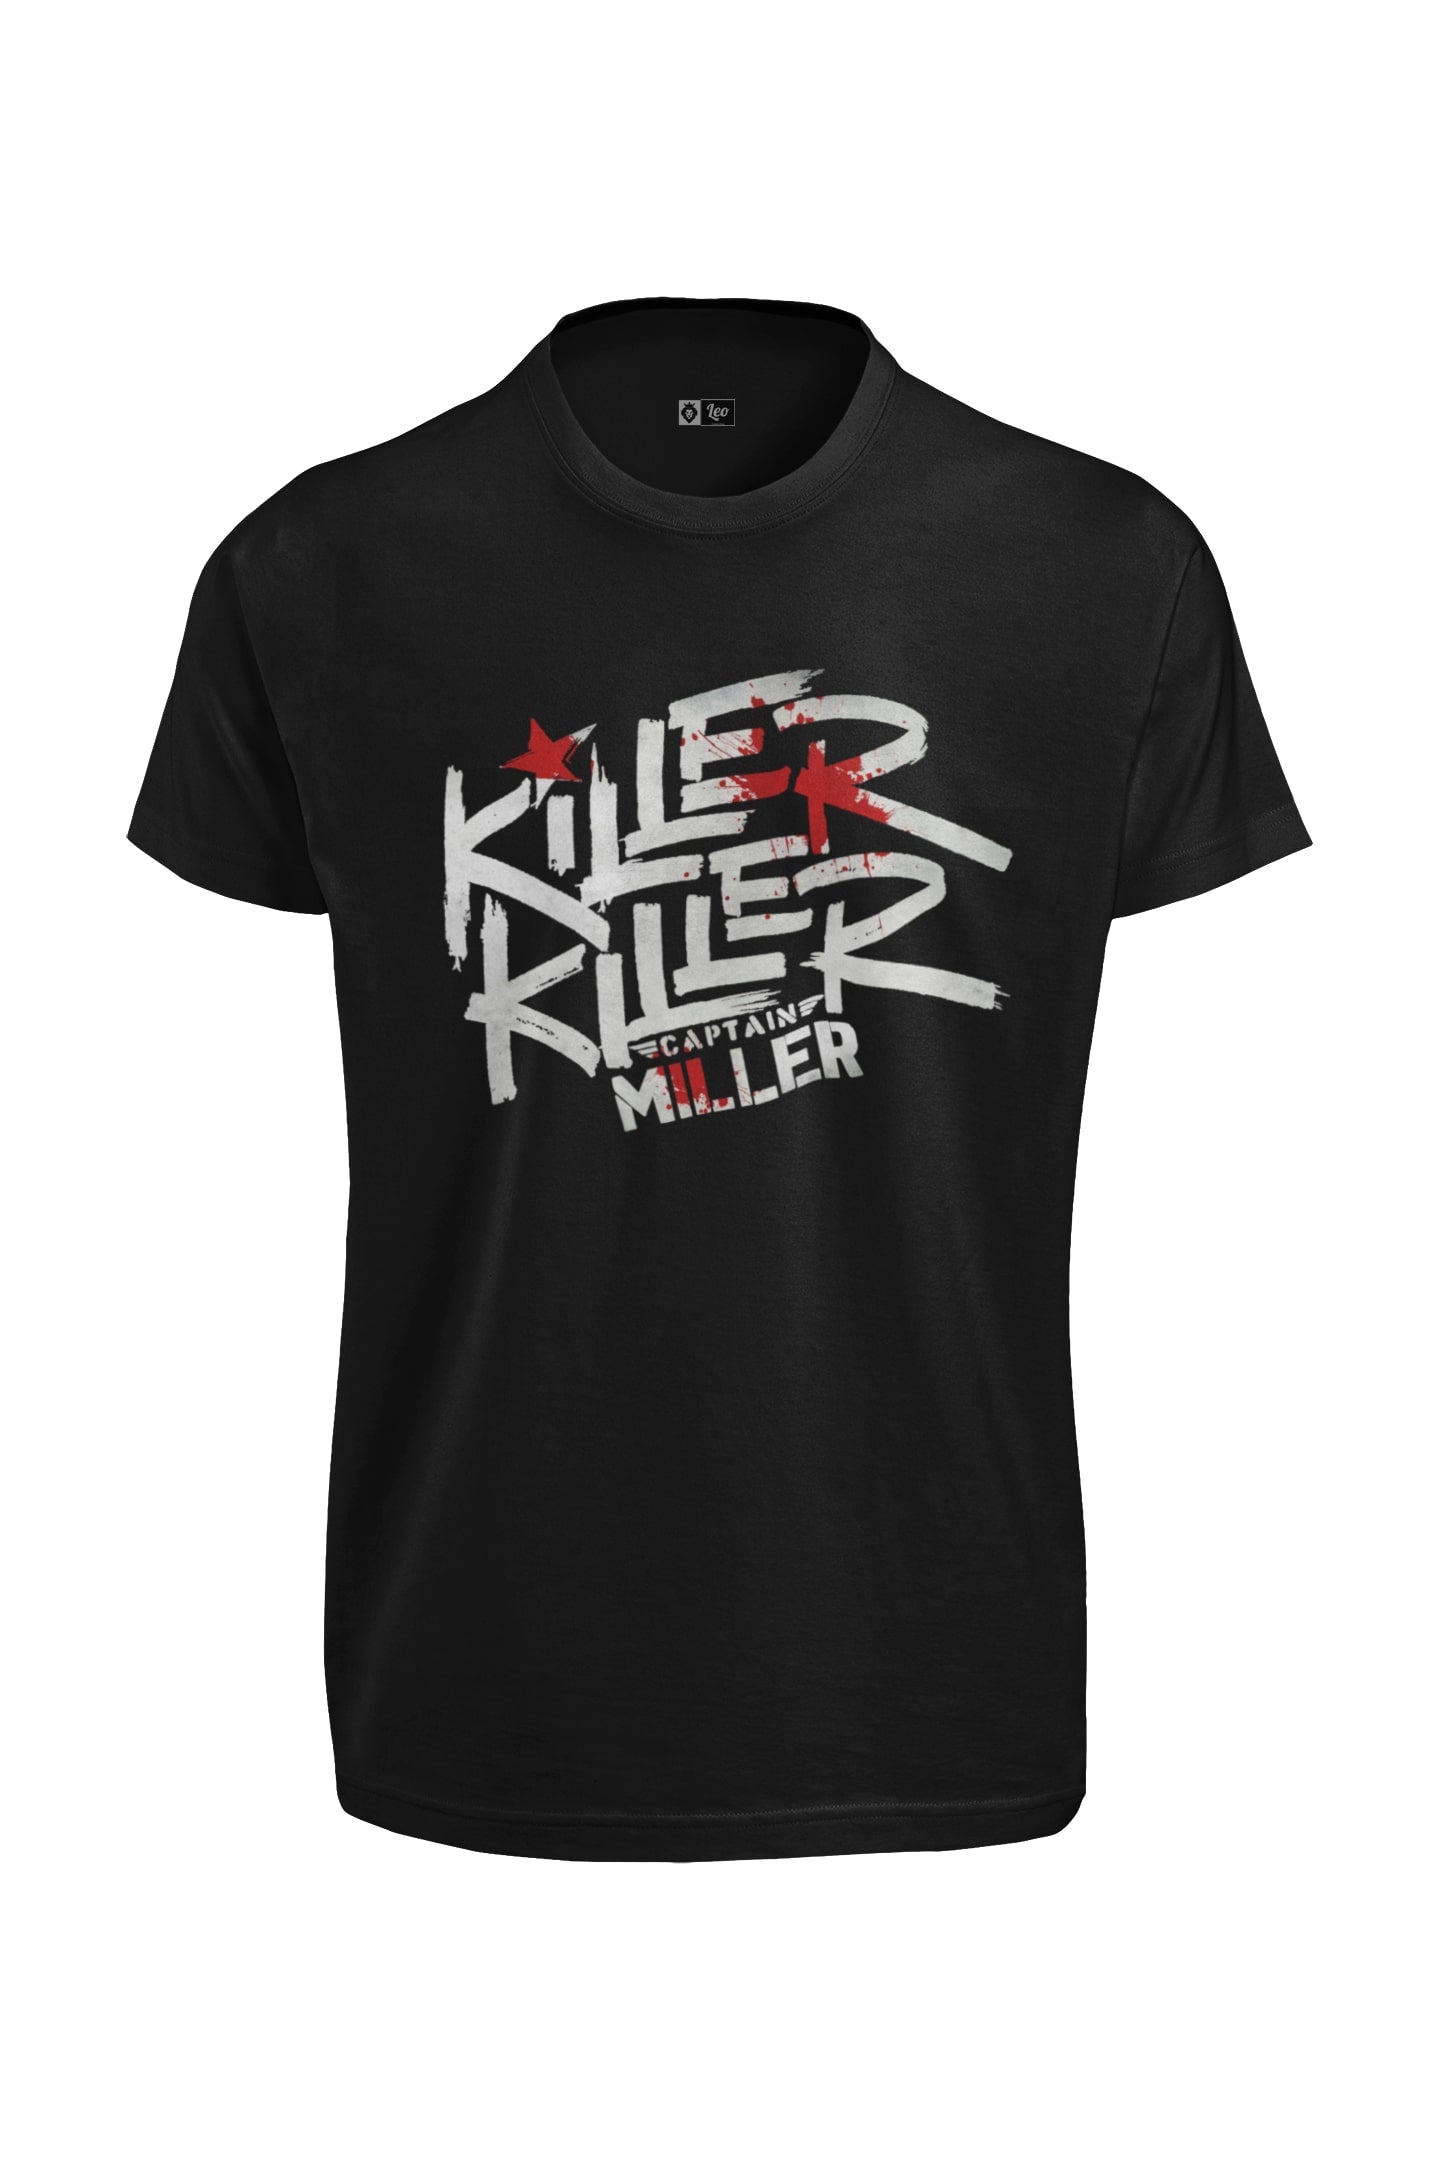 Killer Killer Captain Miller T-Shirt | Dhanush